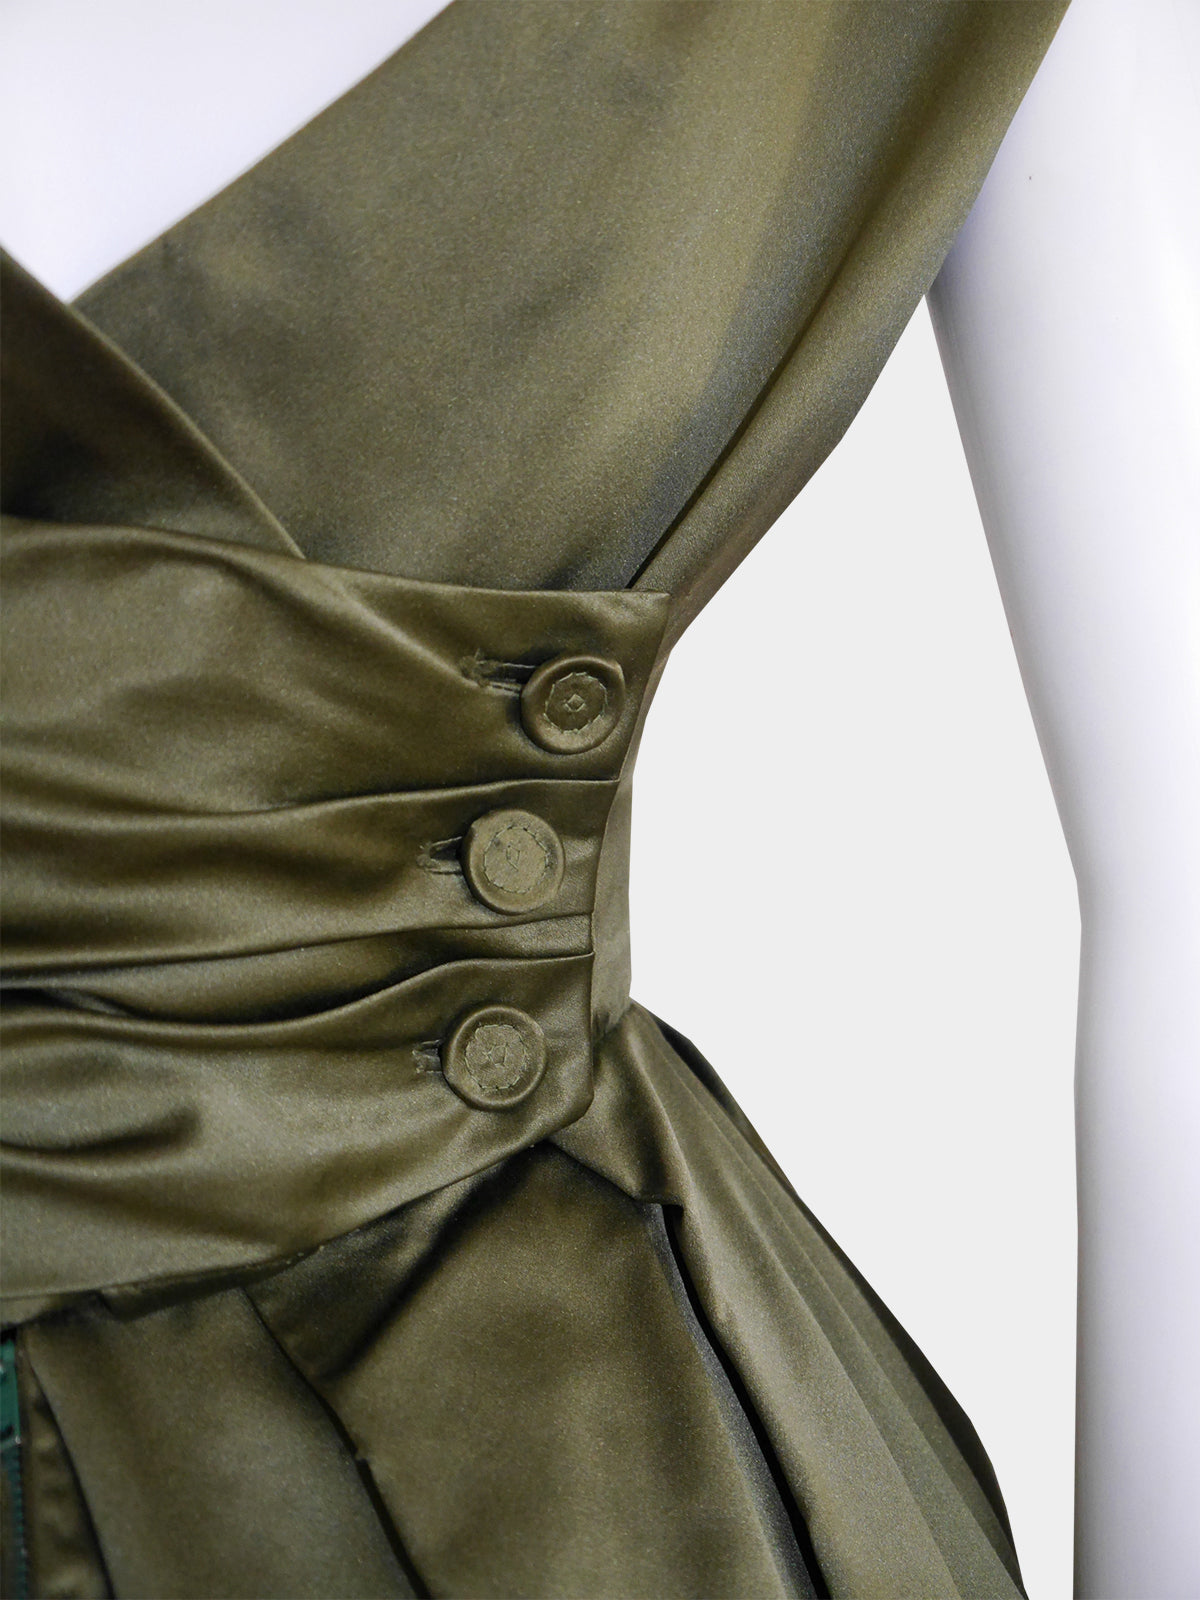 CHRISTIAN DIOR Fall 1957 Haute Couture Venezuela Draped Silk Evening –  VINTAGE VON WERTH